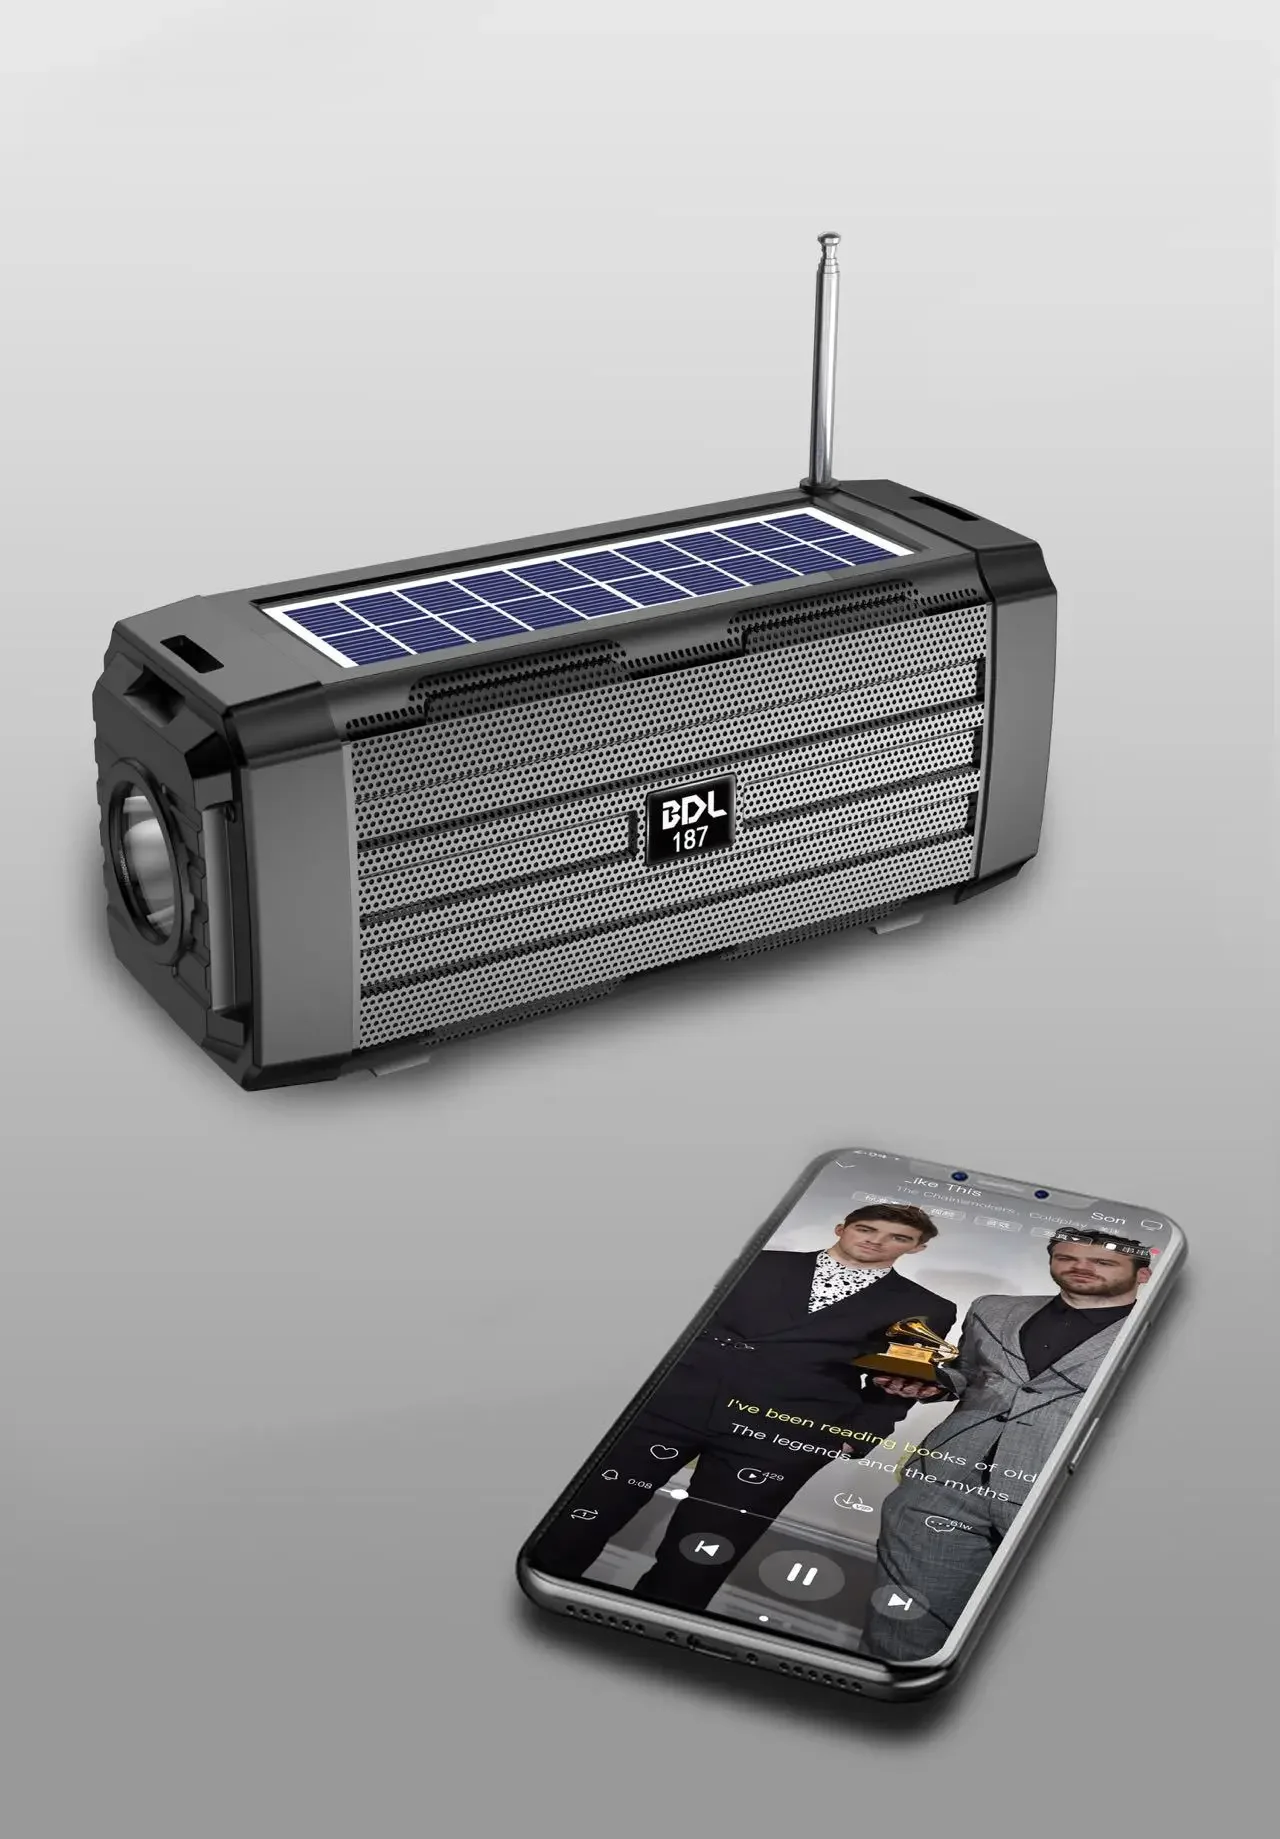 Портативная уличная аудиосистема с солнечной зарядкой, подвесная Спортивная Bluetooth-Колонка большого объема